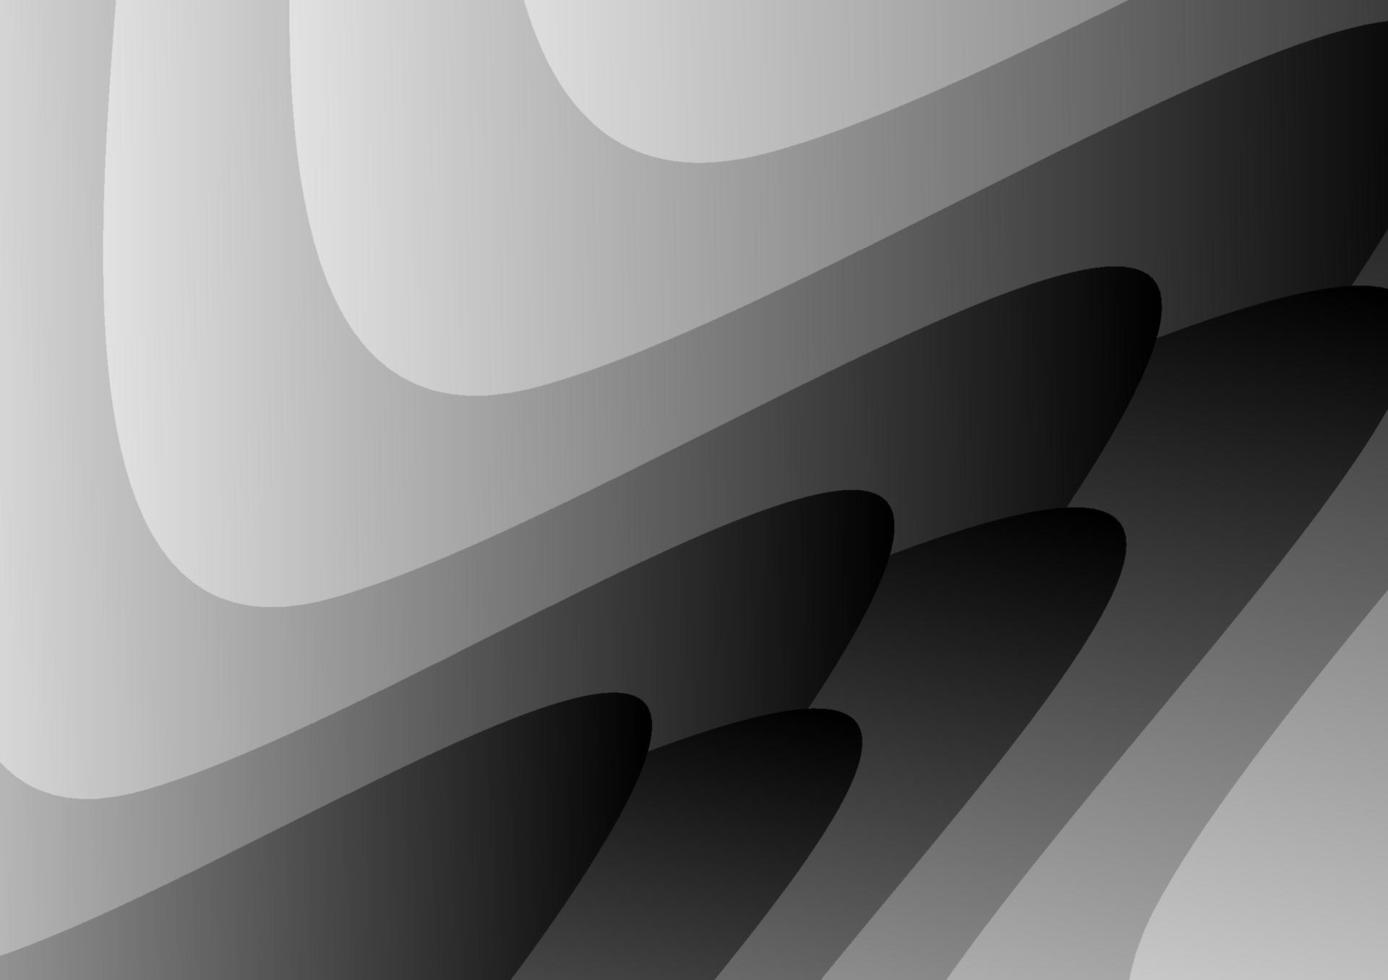 padrão de curva abstrata na cor gradiente preto e branco. fundo de vetor de faixa criativa para modelo de folheto, livreto, panfleto, pôster